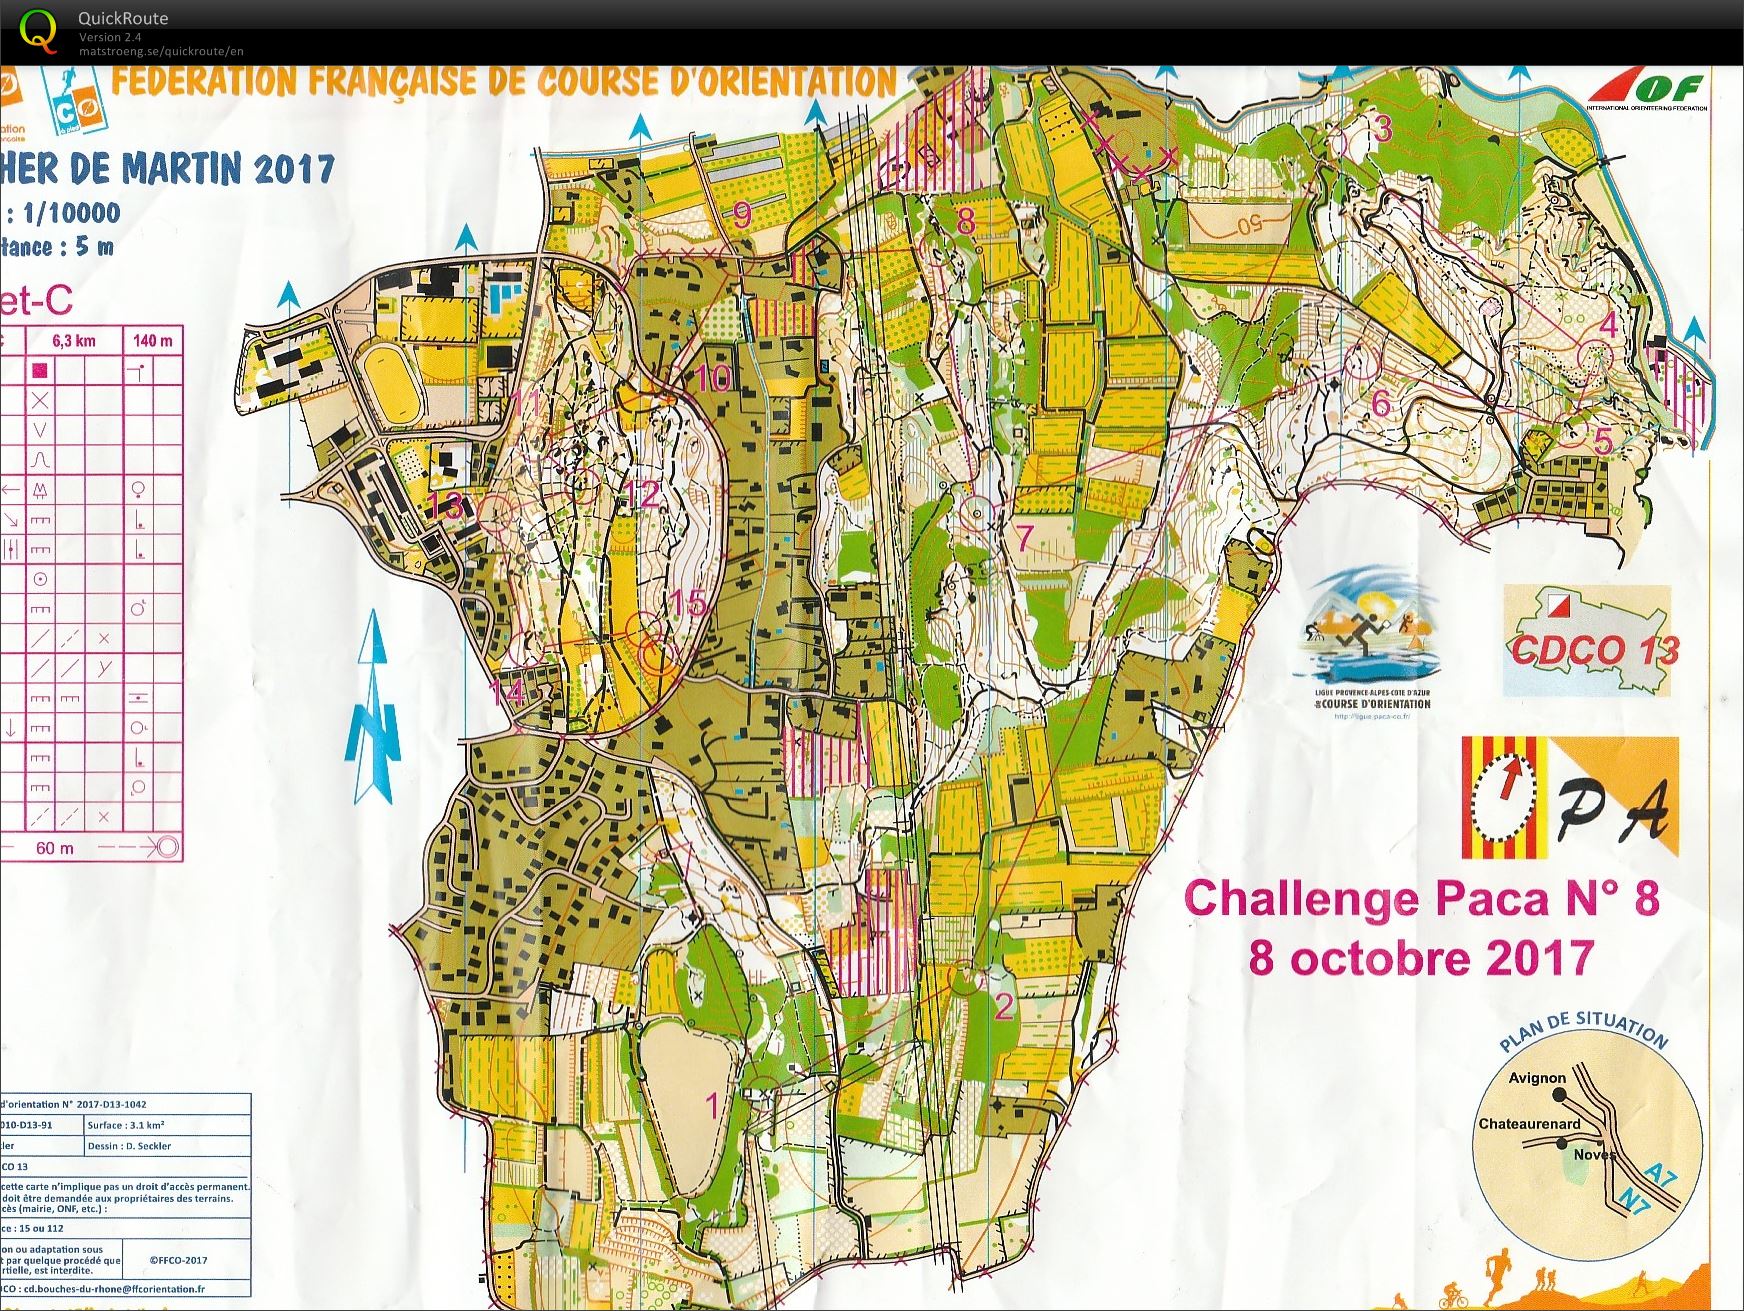 Challenge PACA n° 8 Chateaurenard (2017-10-08)